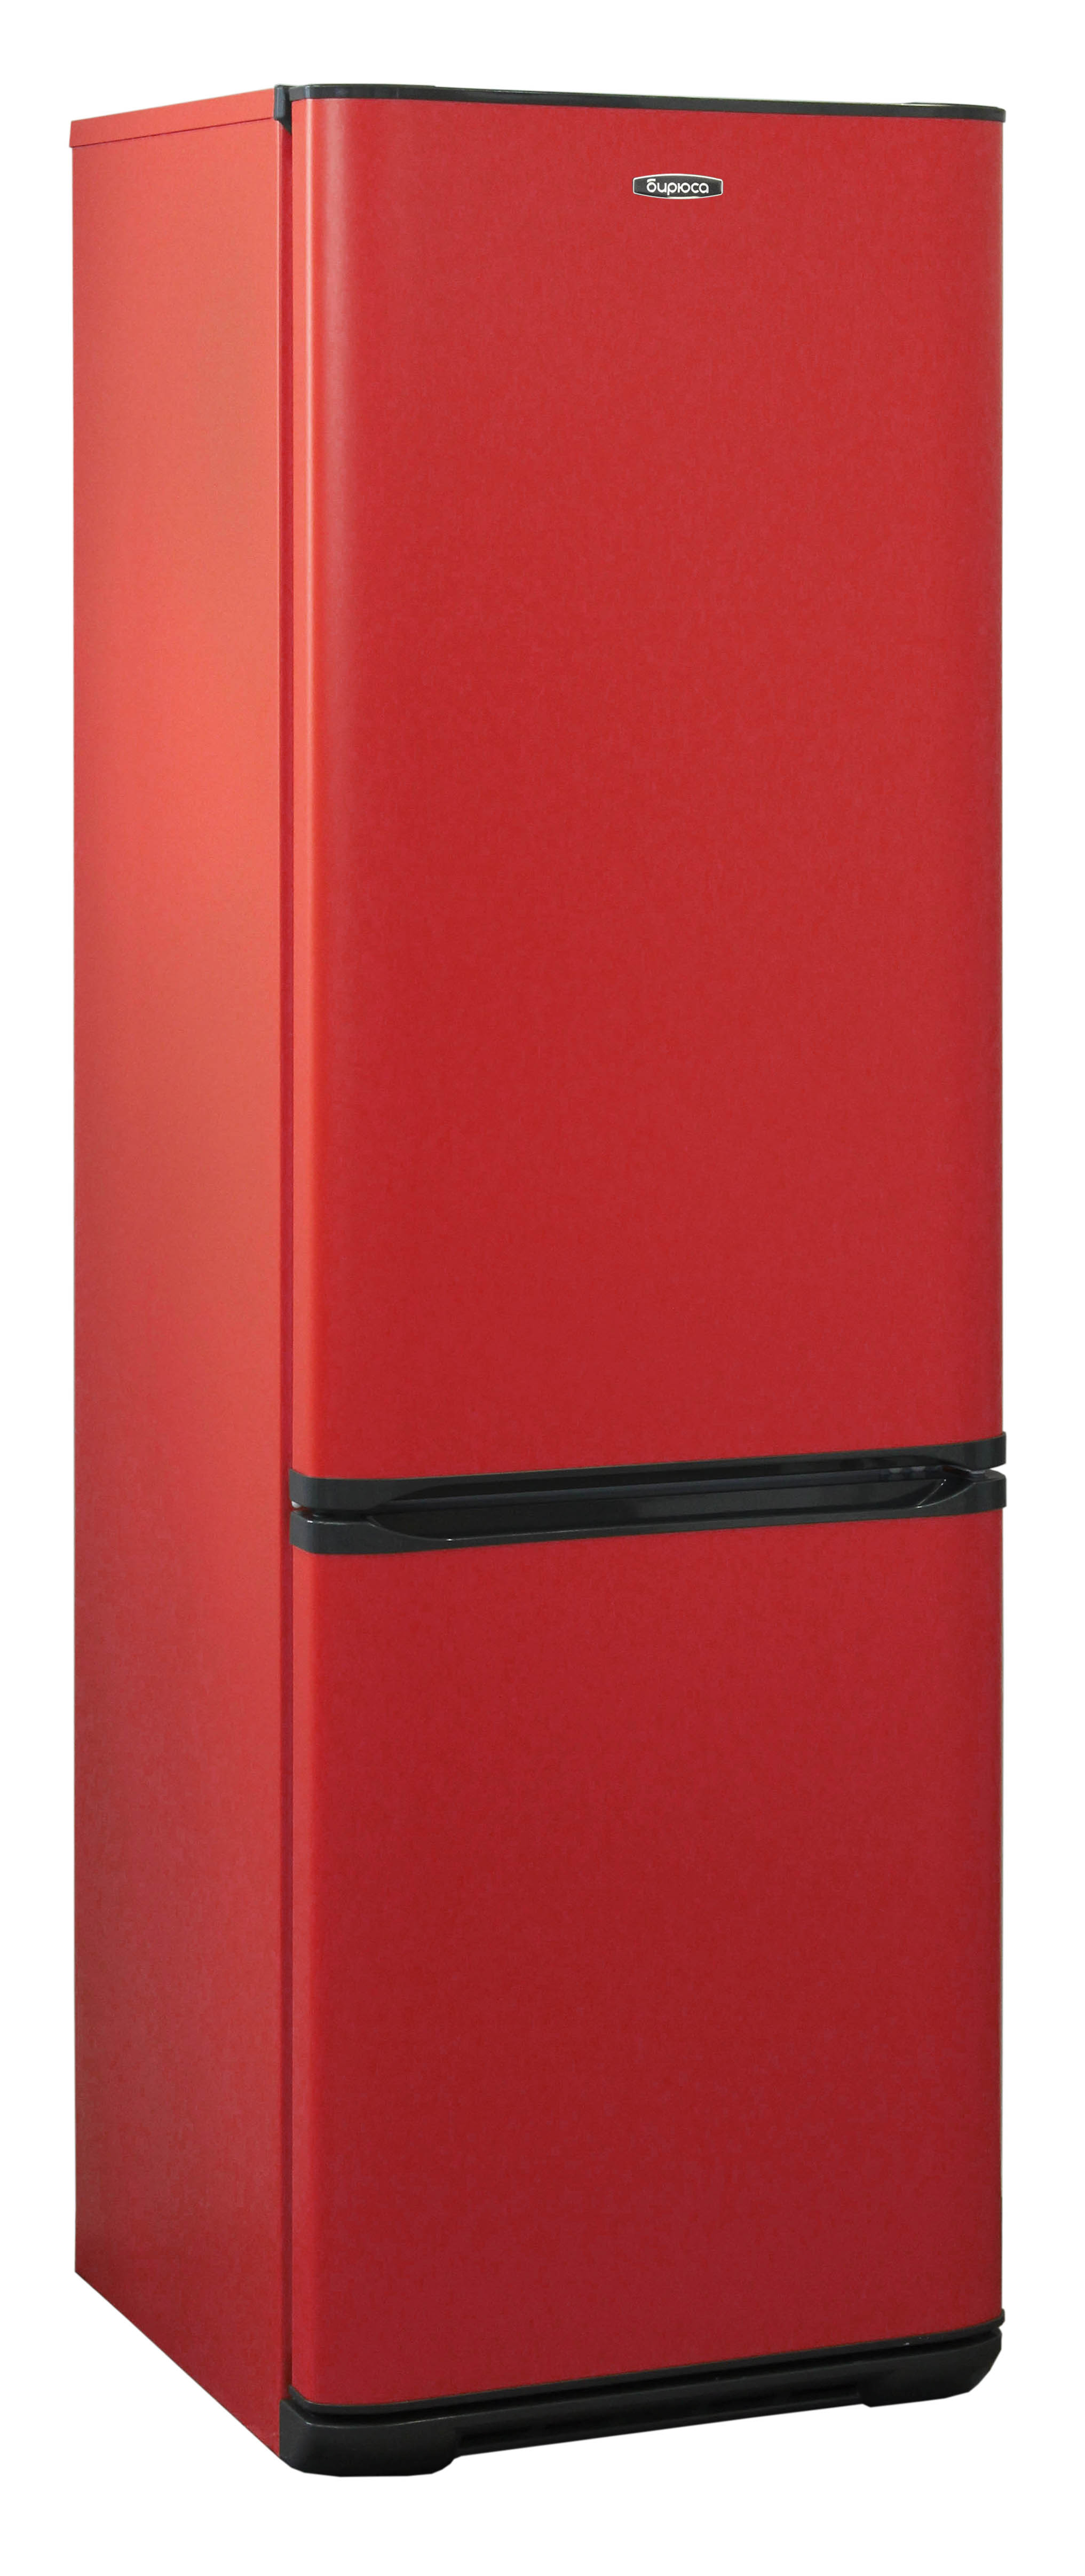 холодильник бирюса 627, купить в Красноярске холодильник бирюса 627,  купить в Красноярске дешево холодильник бирюса 627, купить в Красноярске минимальной цене холодильник бирюса 627